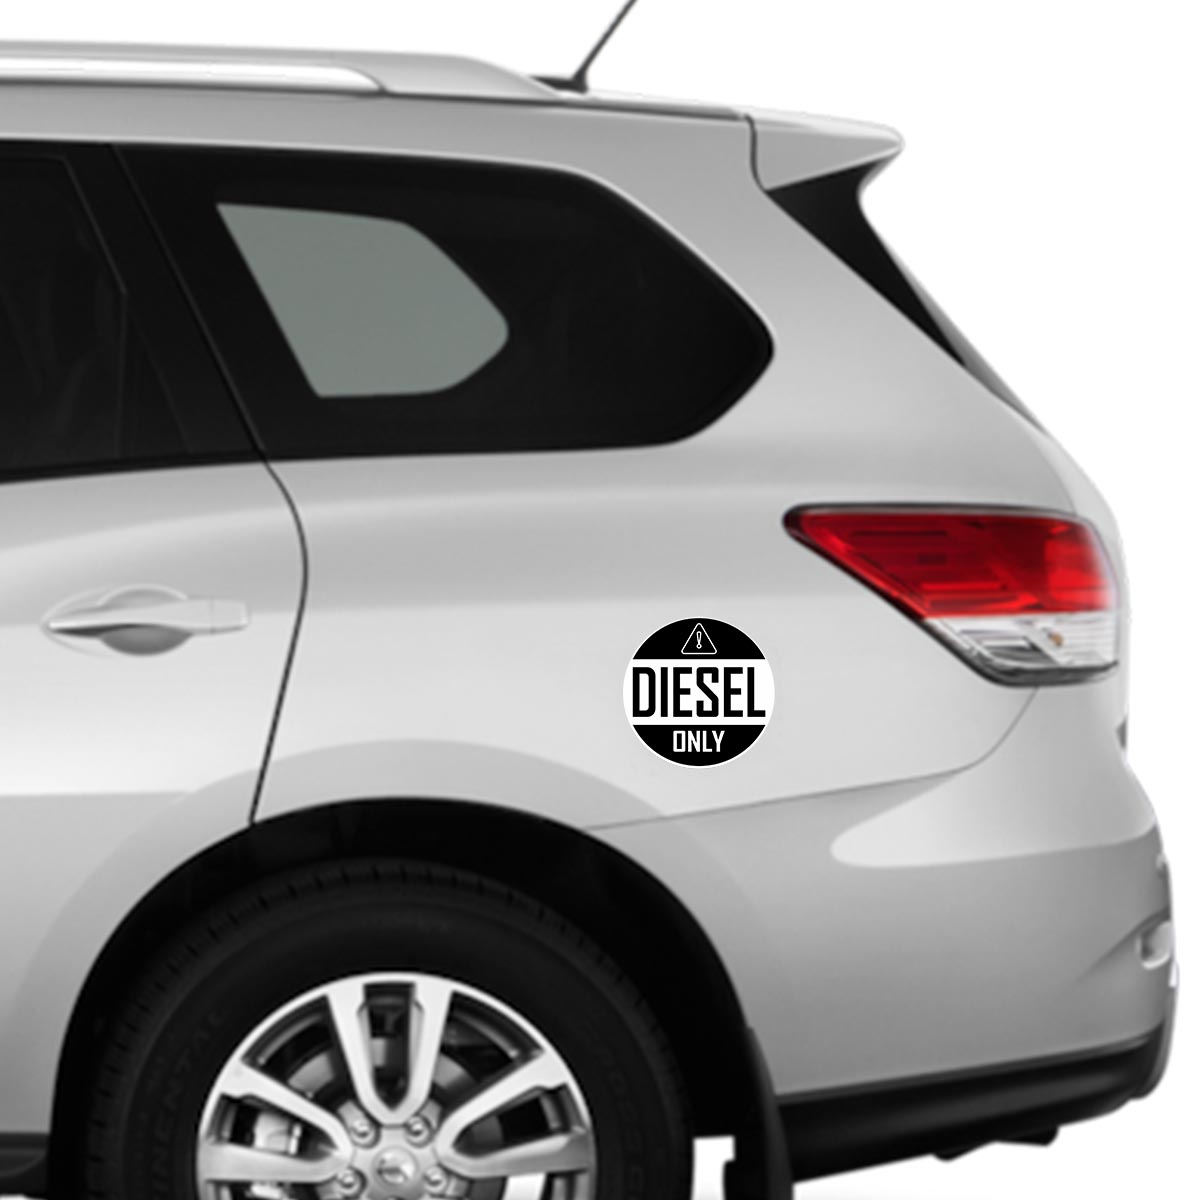 Car fuel tank stickers & bike stickers by WrapCart – WrapCart Skins